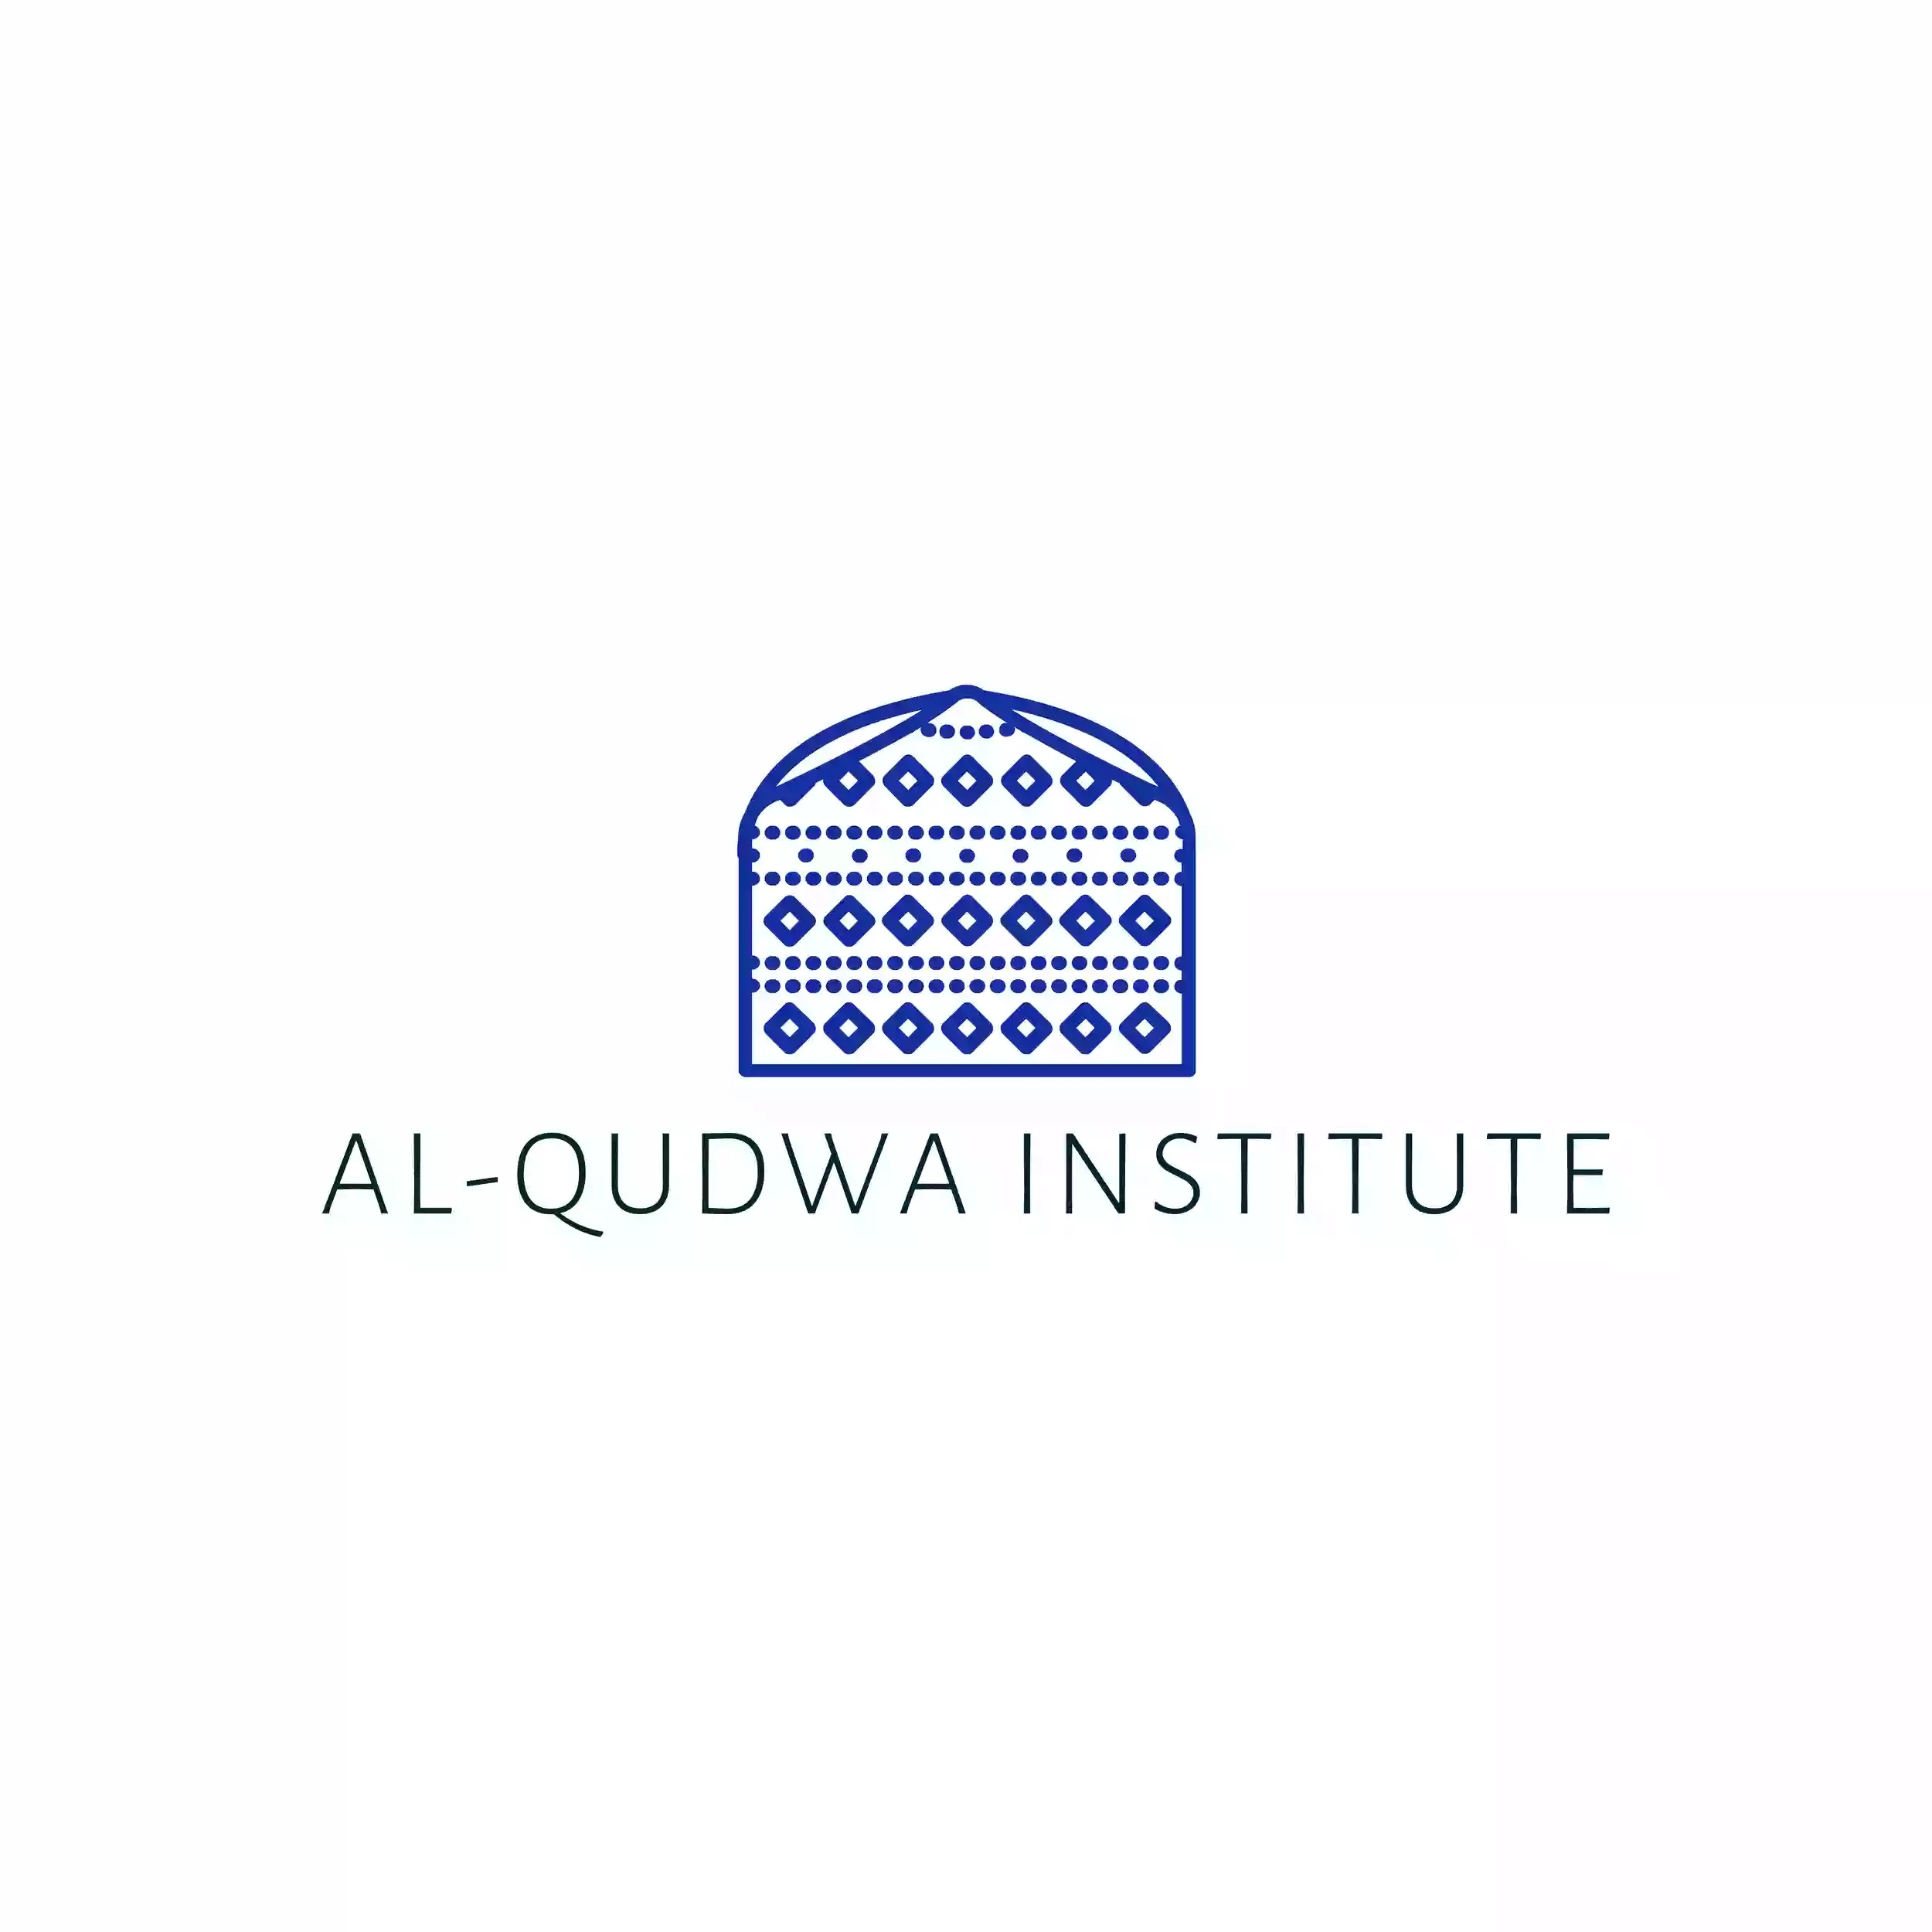 Al-Qudwa Institute